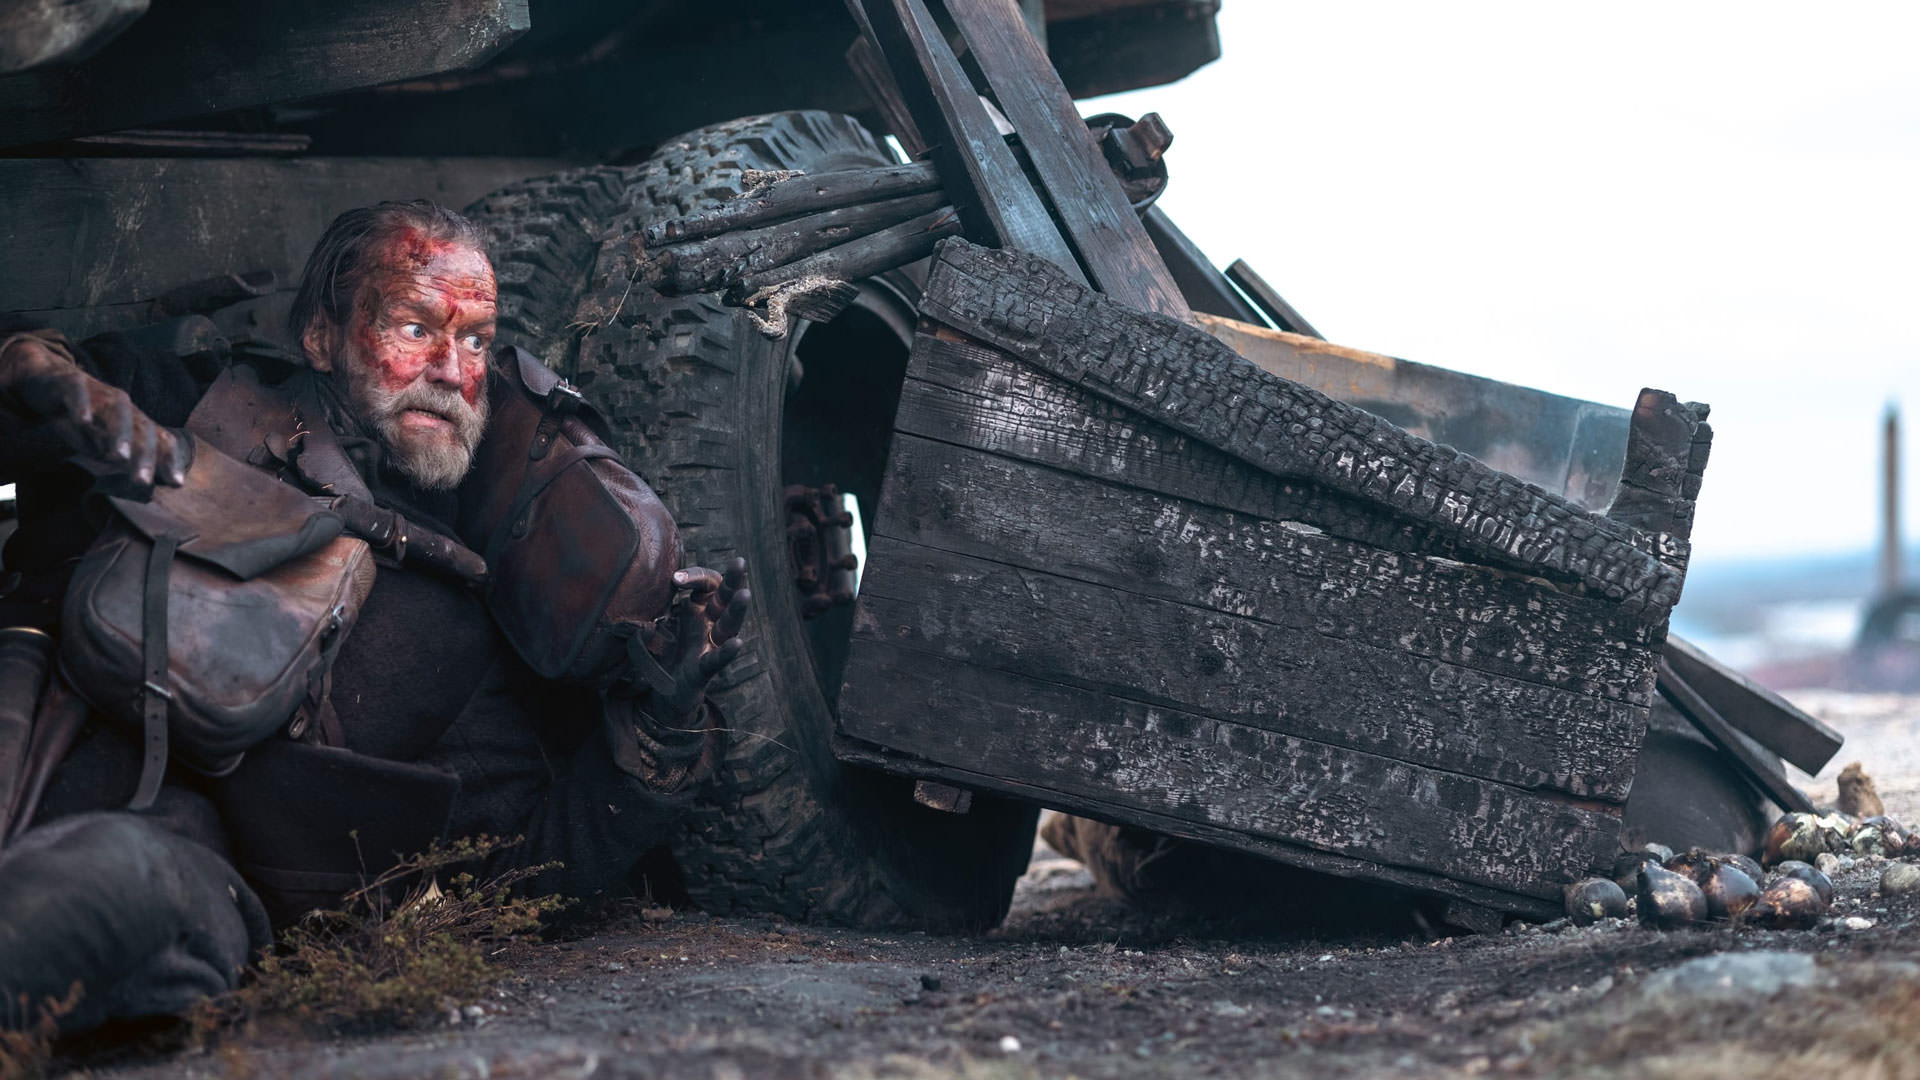 یک مرد مسن که پشت یک ماشین سوخته پناه گرفته است در نمایی از فیلم سیسو به کارگردانی جلماری هلندر